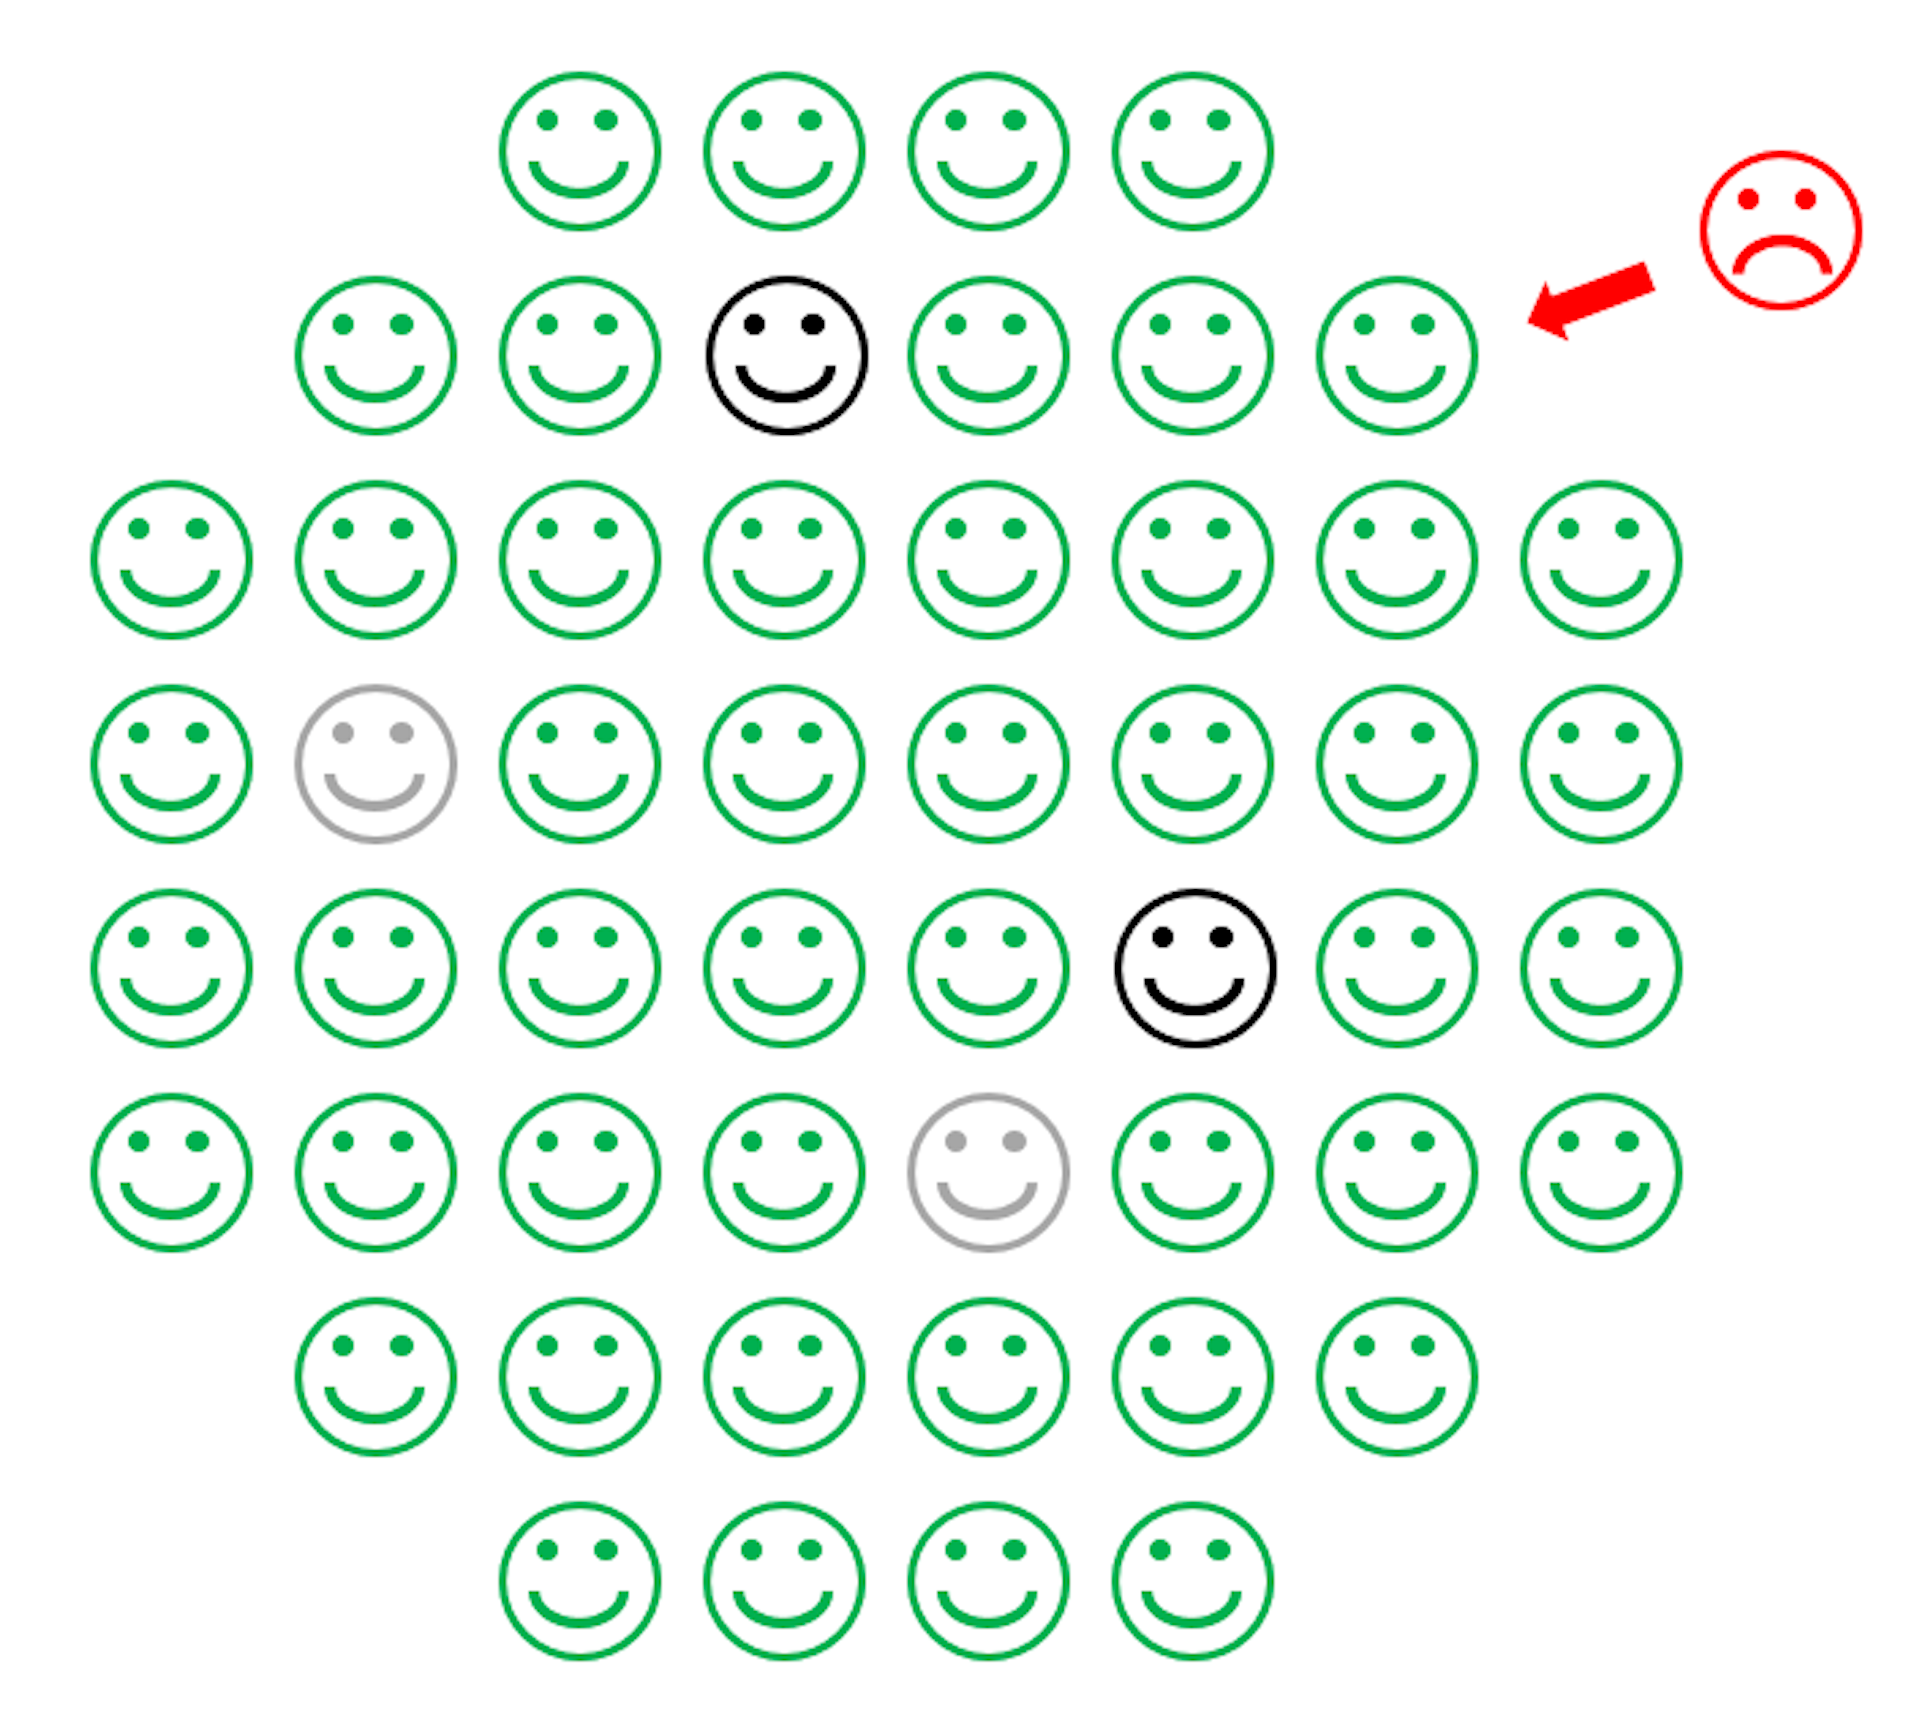 Piirros, jossa näkyy vihreiden iloisten kasvojen ympyrä, jonka keskellä on joitakin sinisiä iloisia kasvoja, ja punaiset rypistyneet kasvot, jotka eivät pääse sinisten kasvojen luokse.